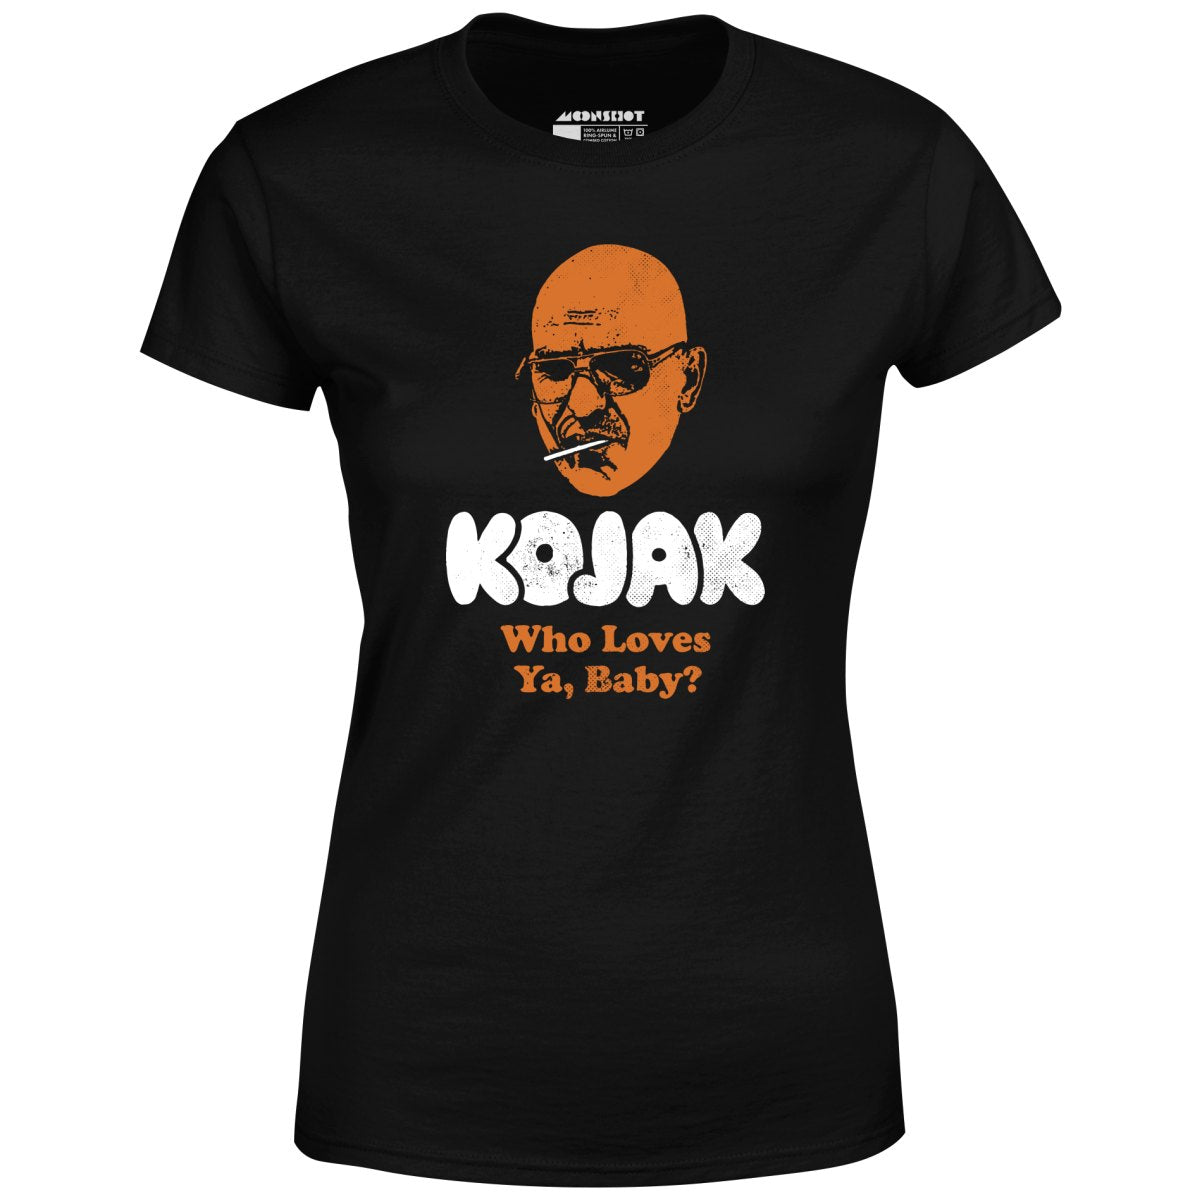 Kojak Who Loves Ya Baby - Women's T-Shirt